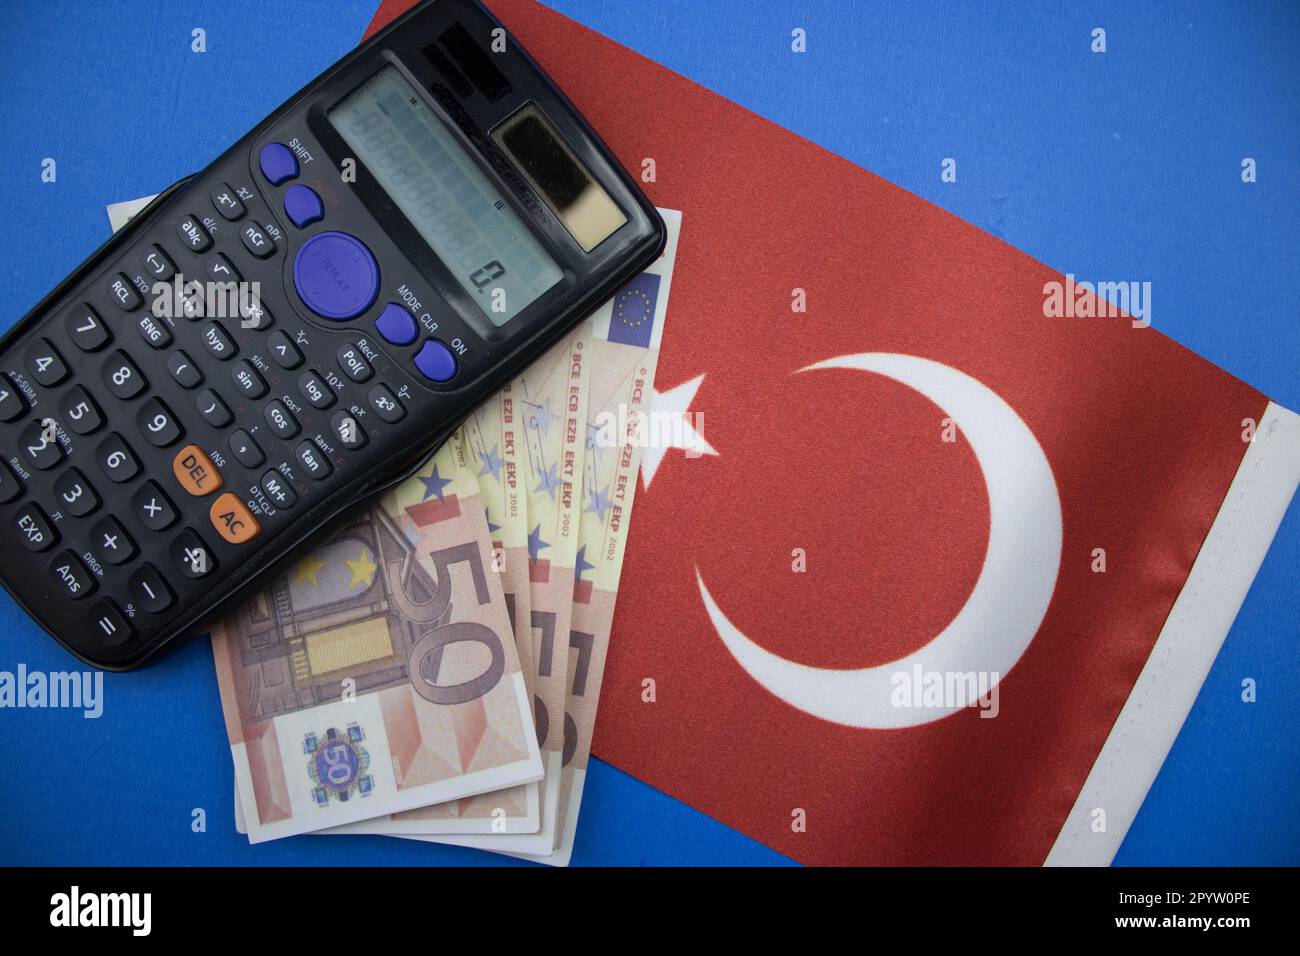 Le drapeau de la Turquie placé sur fond bleu, des euros et une calculatrice. photographié d'en haut. Banque D'Images